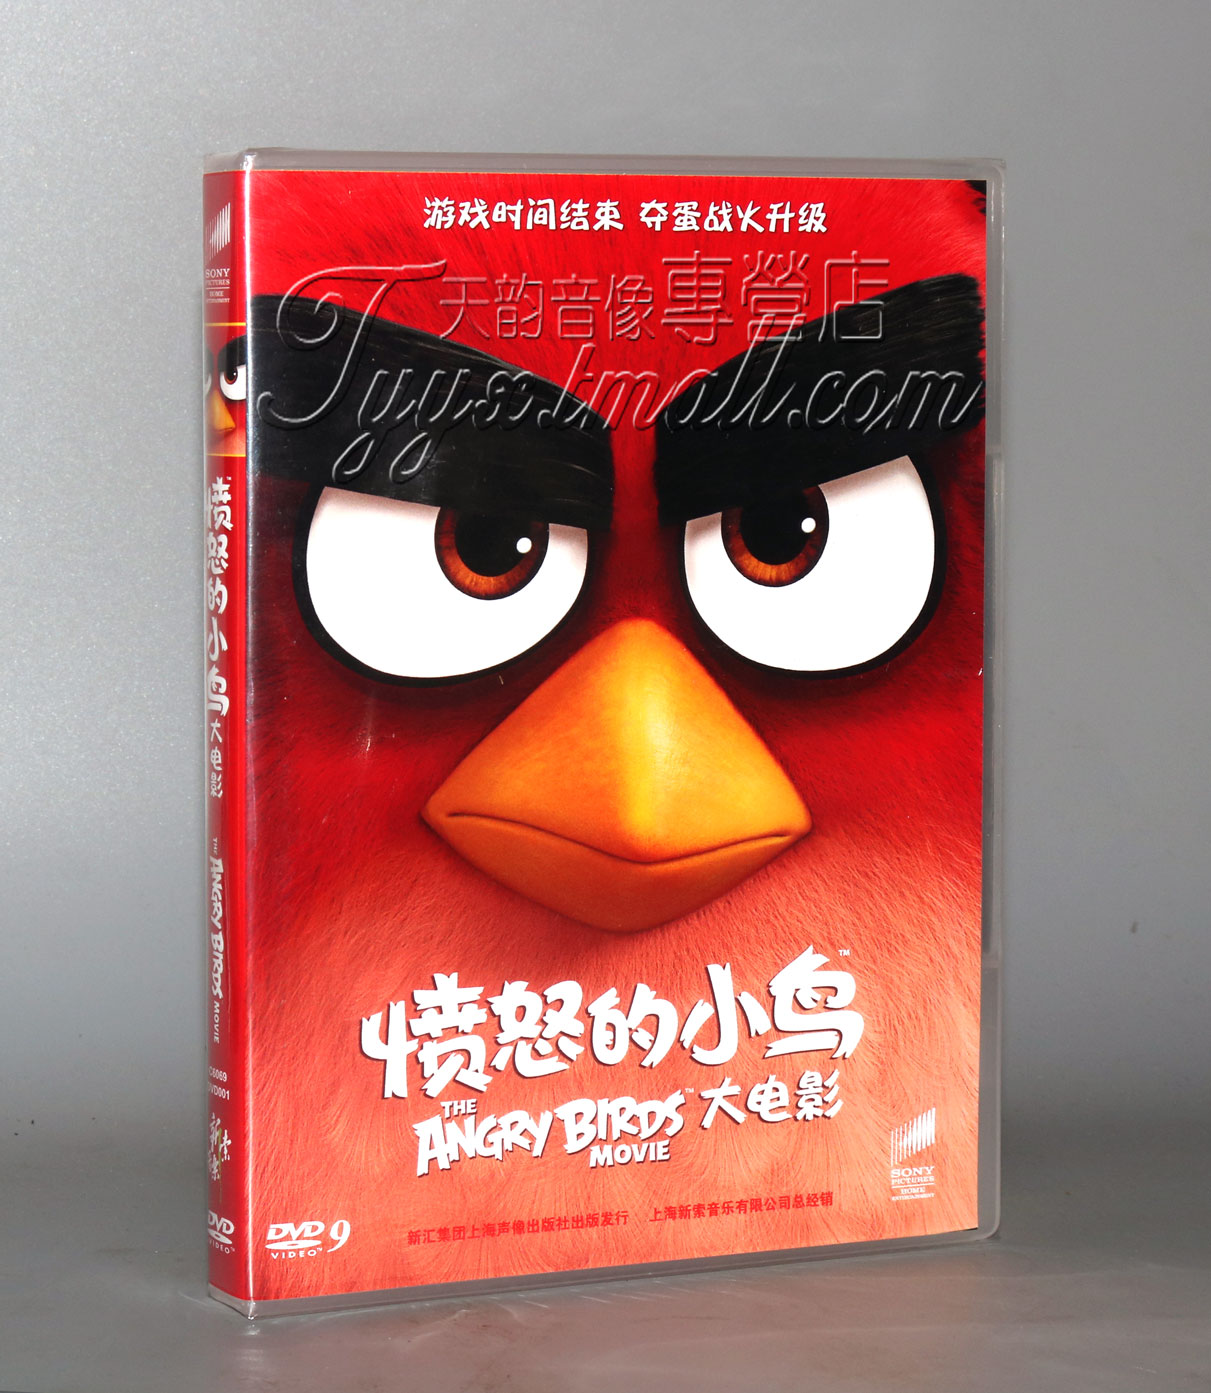 正版愤怒的小鸟大电影 DVD9国语配音儿童动画片